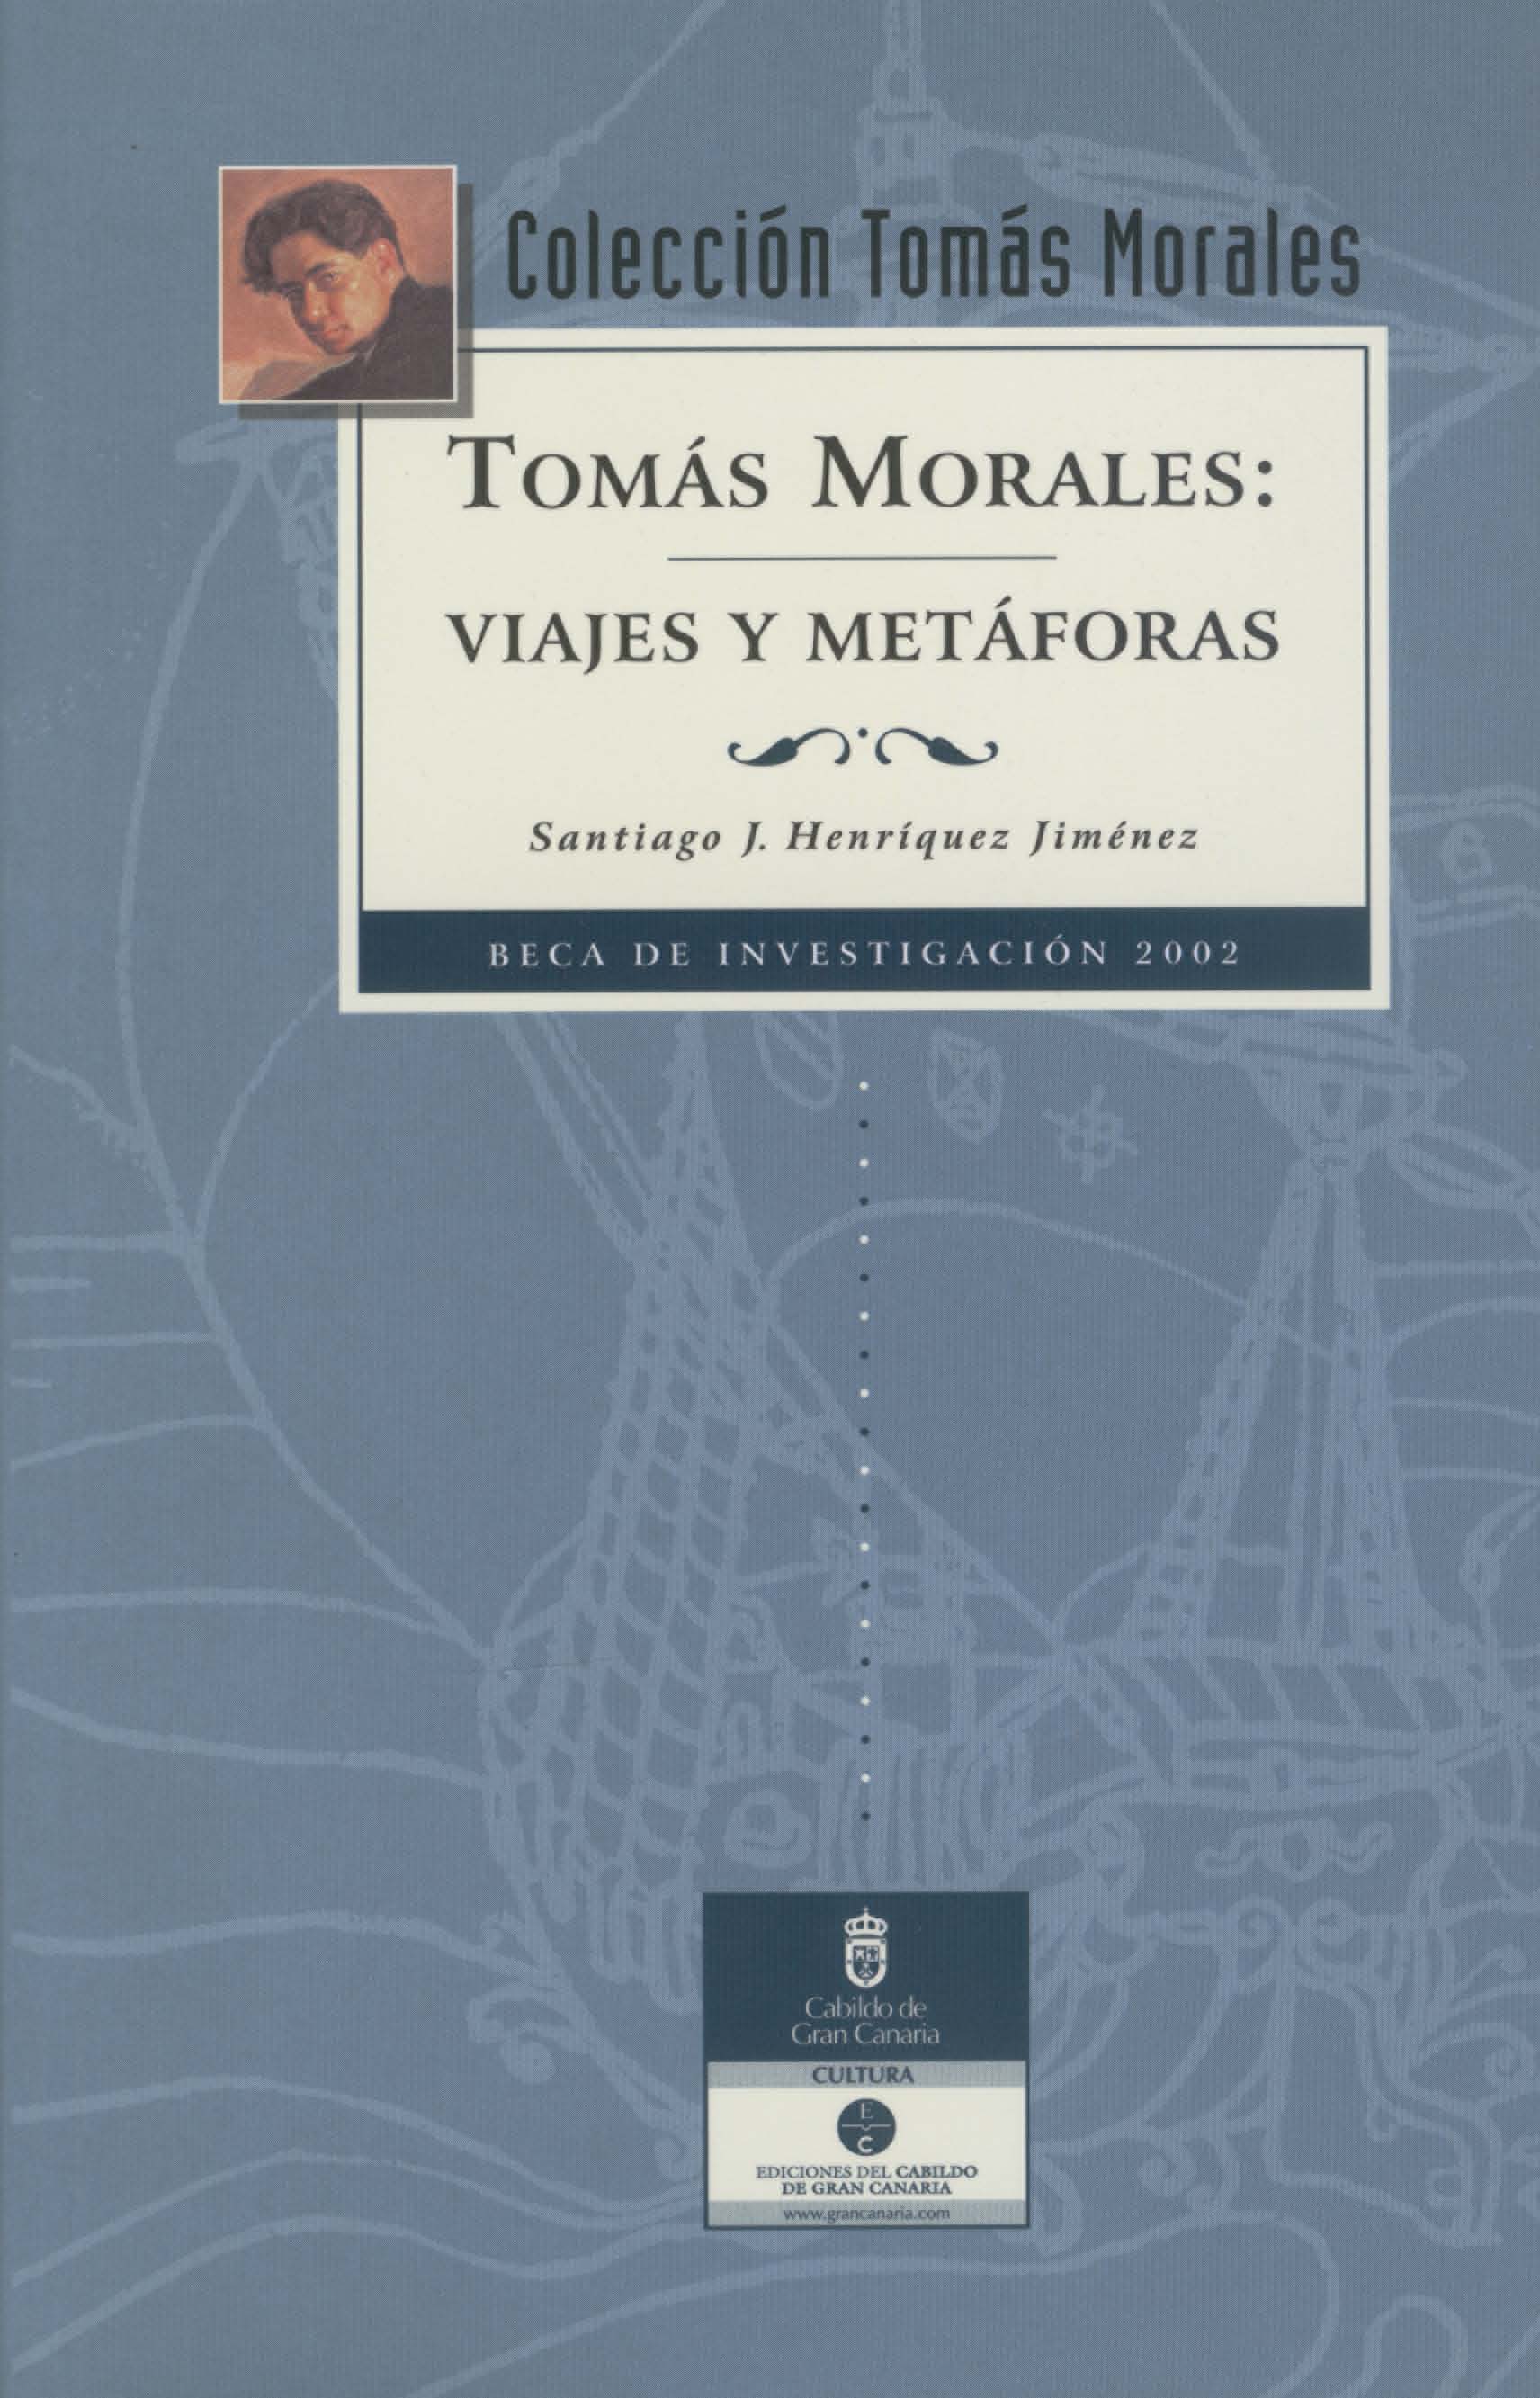 Tomás Morales